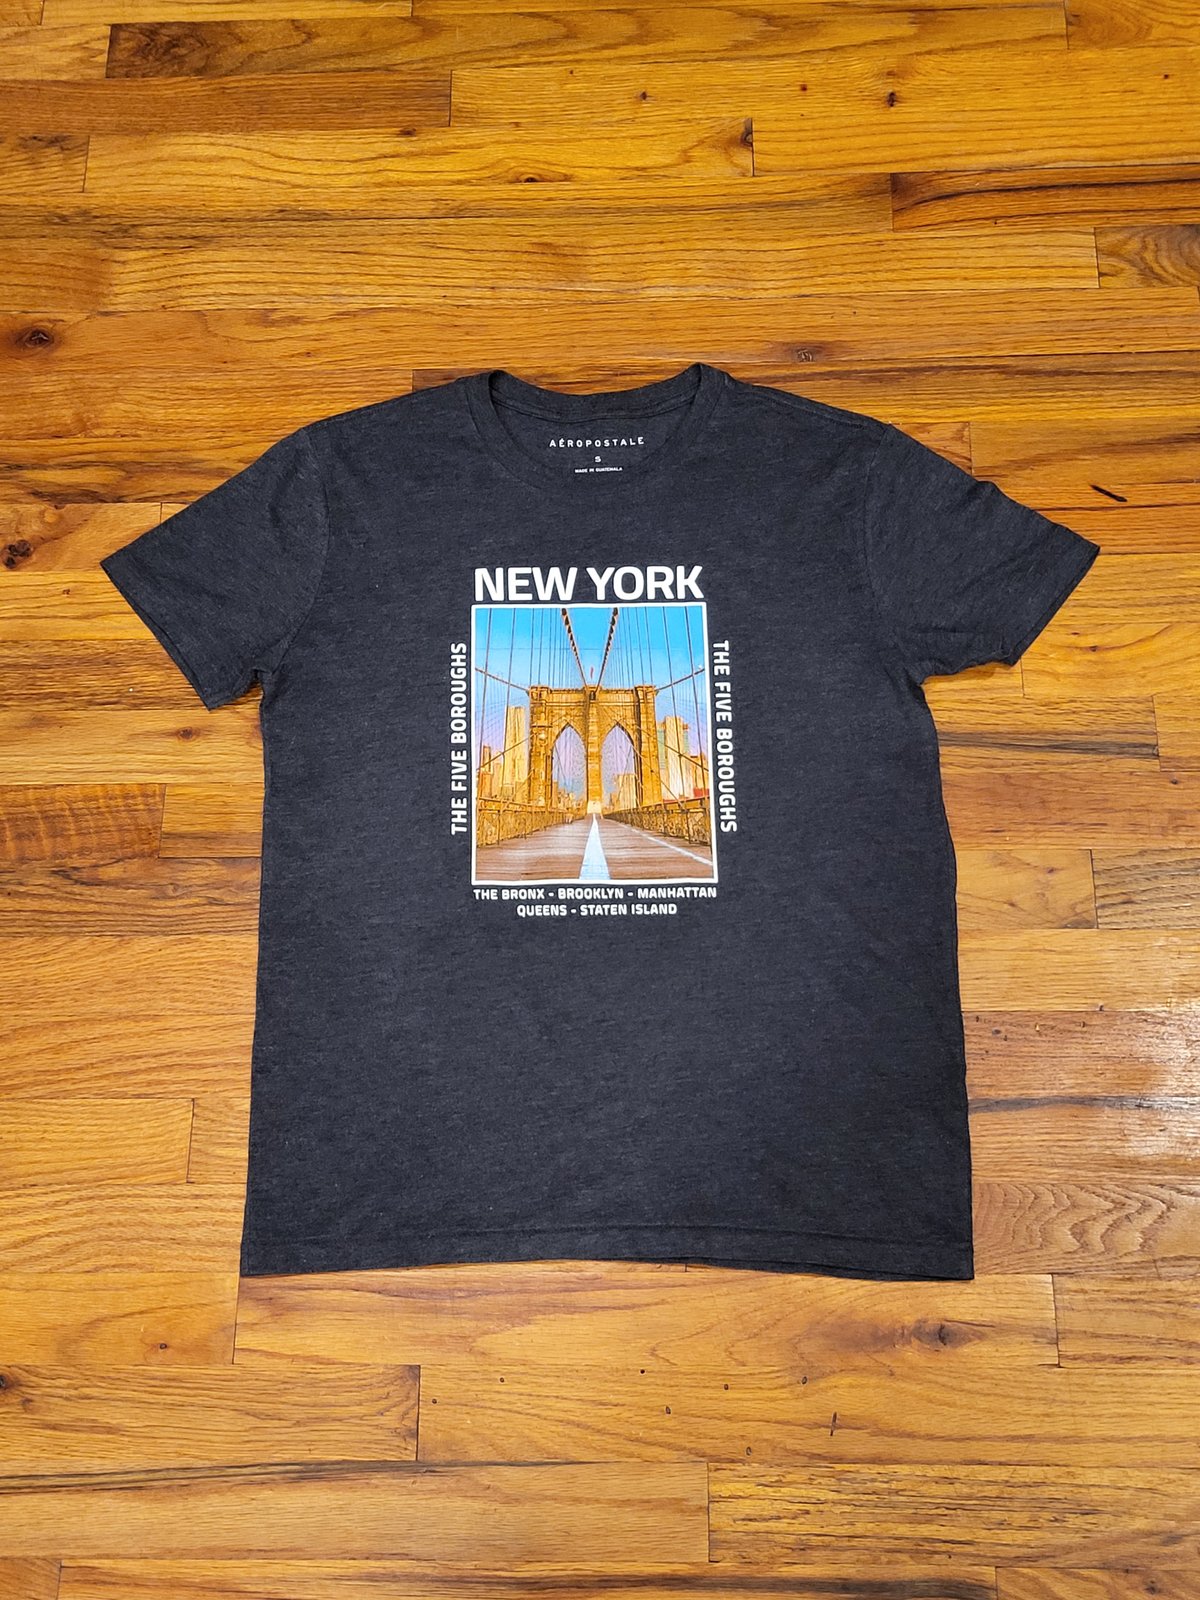 New York - 5 Boroughs